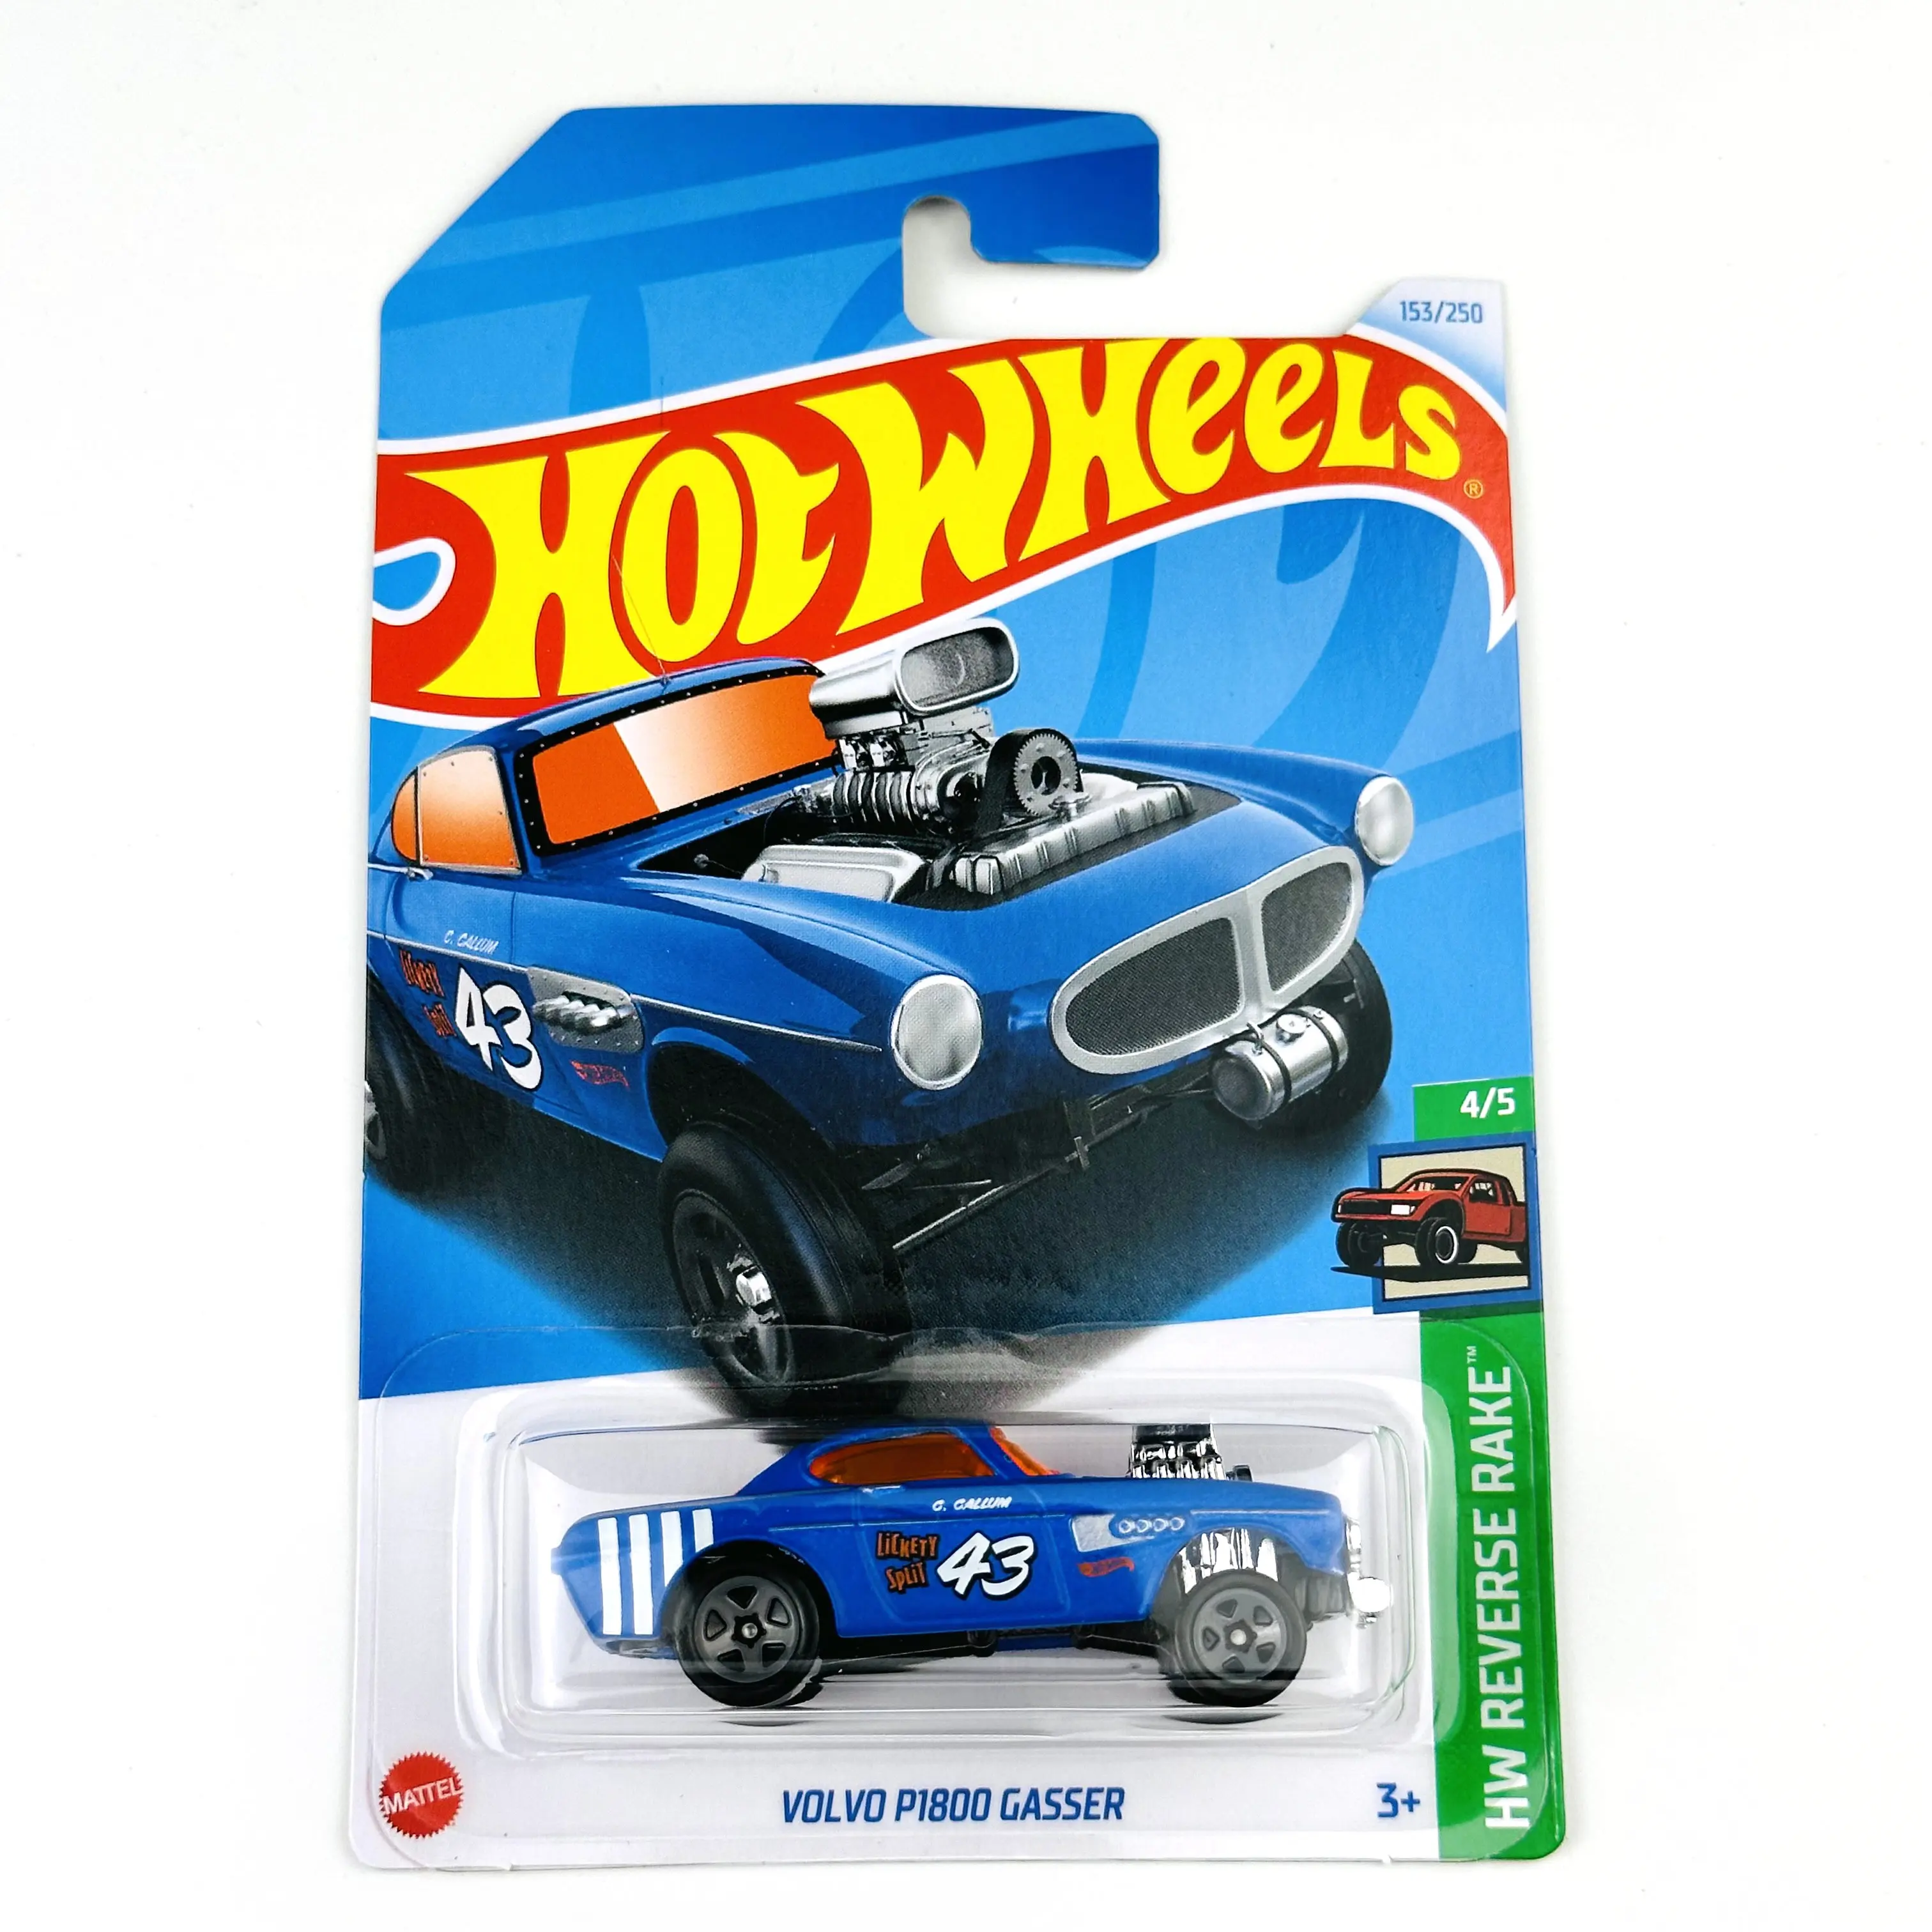 

2024-153 Hot Wheels Cars VOLVO P1800 GASSER 1/64 Metal Die-cast Model Toy Vehicles